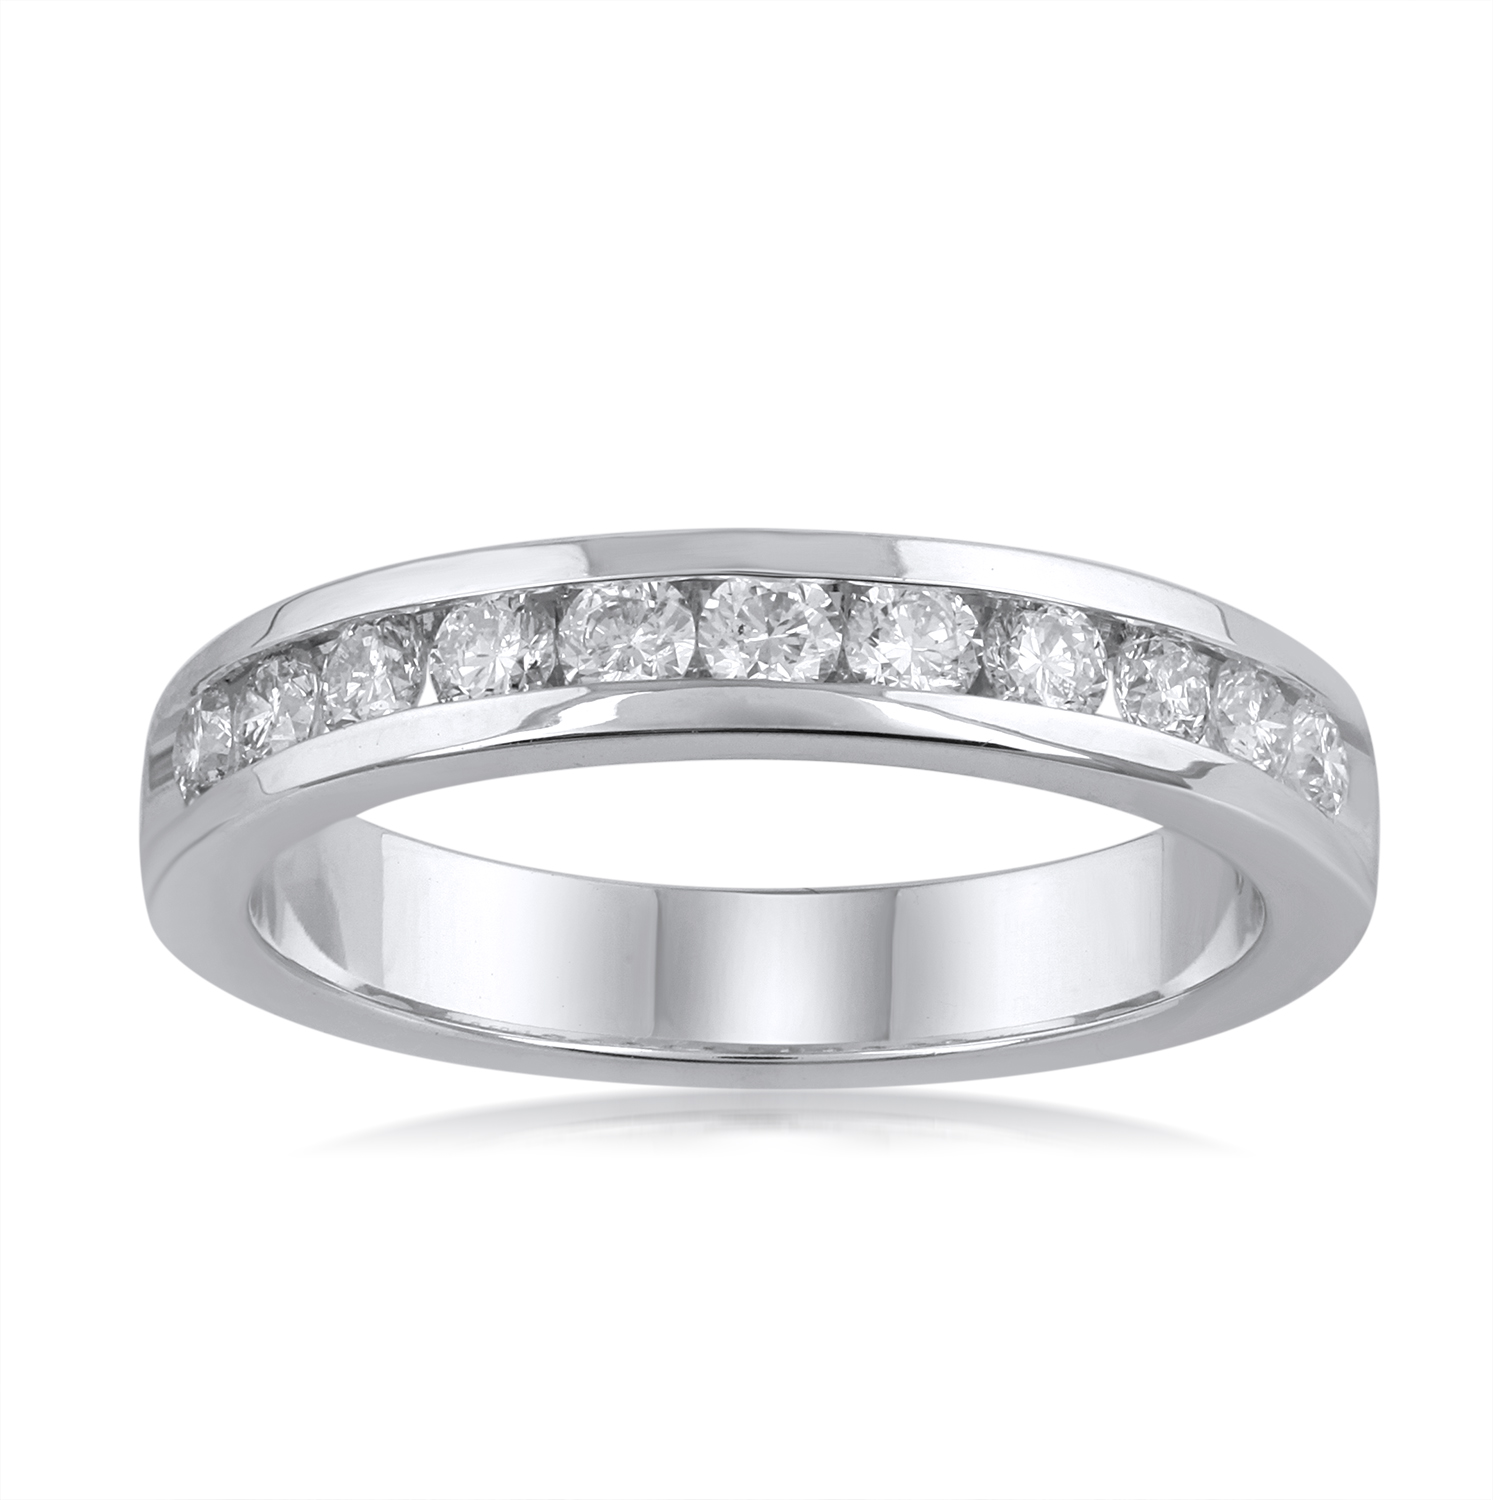 0.5 Carat Diamond Wedding Band Ring in 14k White Gold